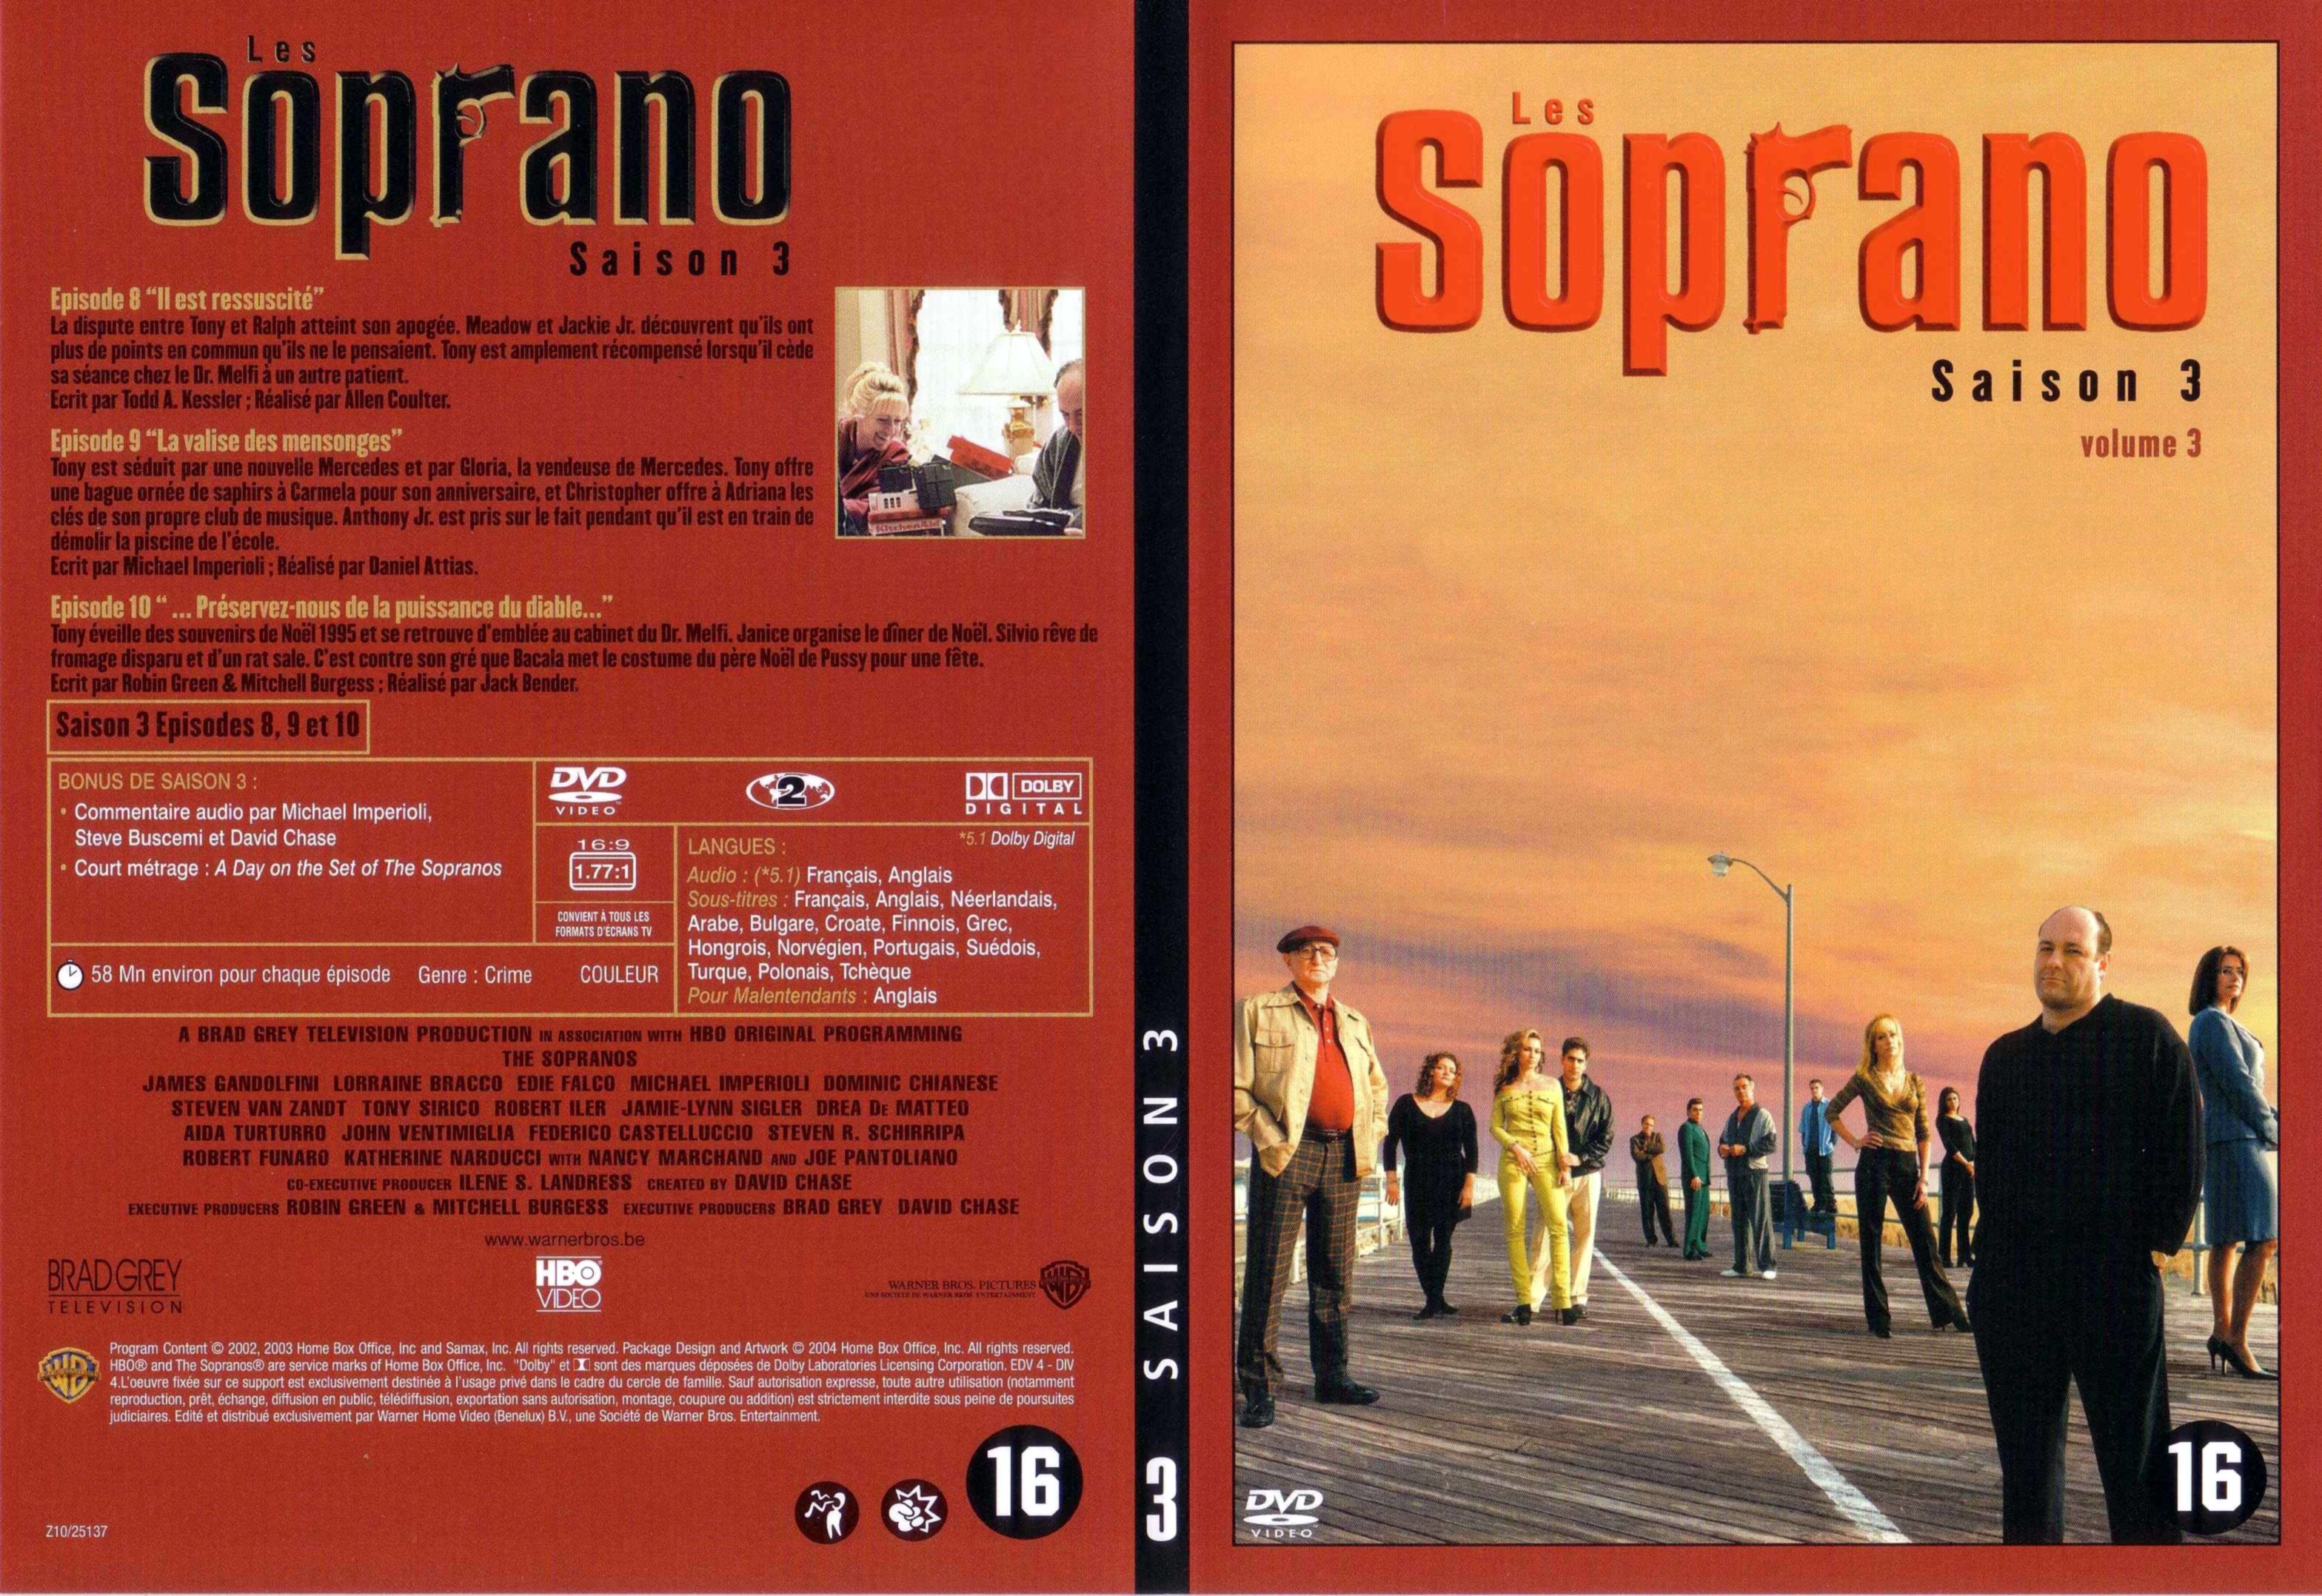 Jaquette DVD Les Soprano saison 3 DVD 3